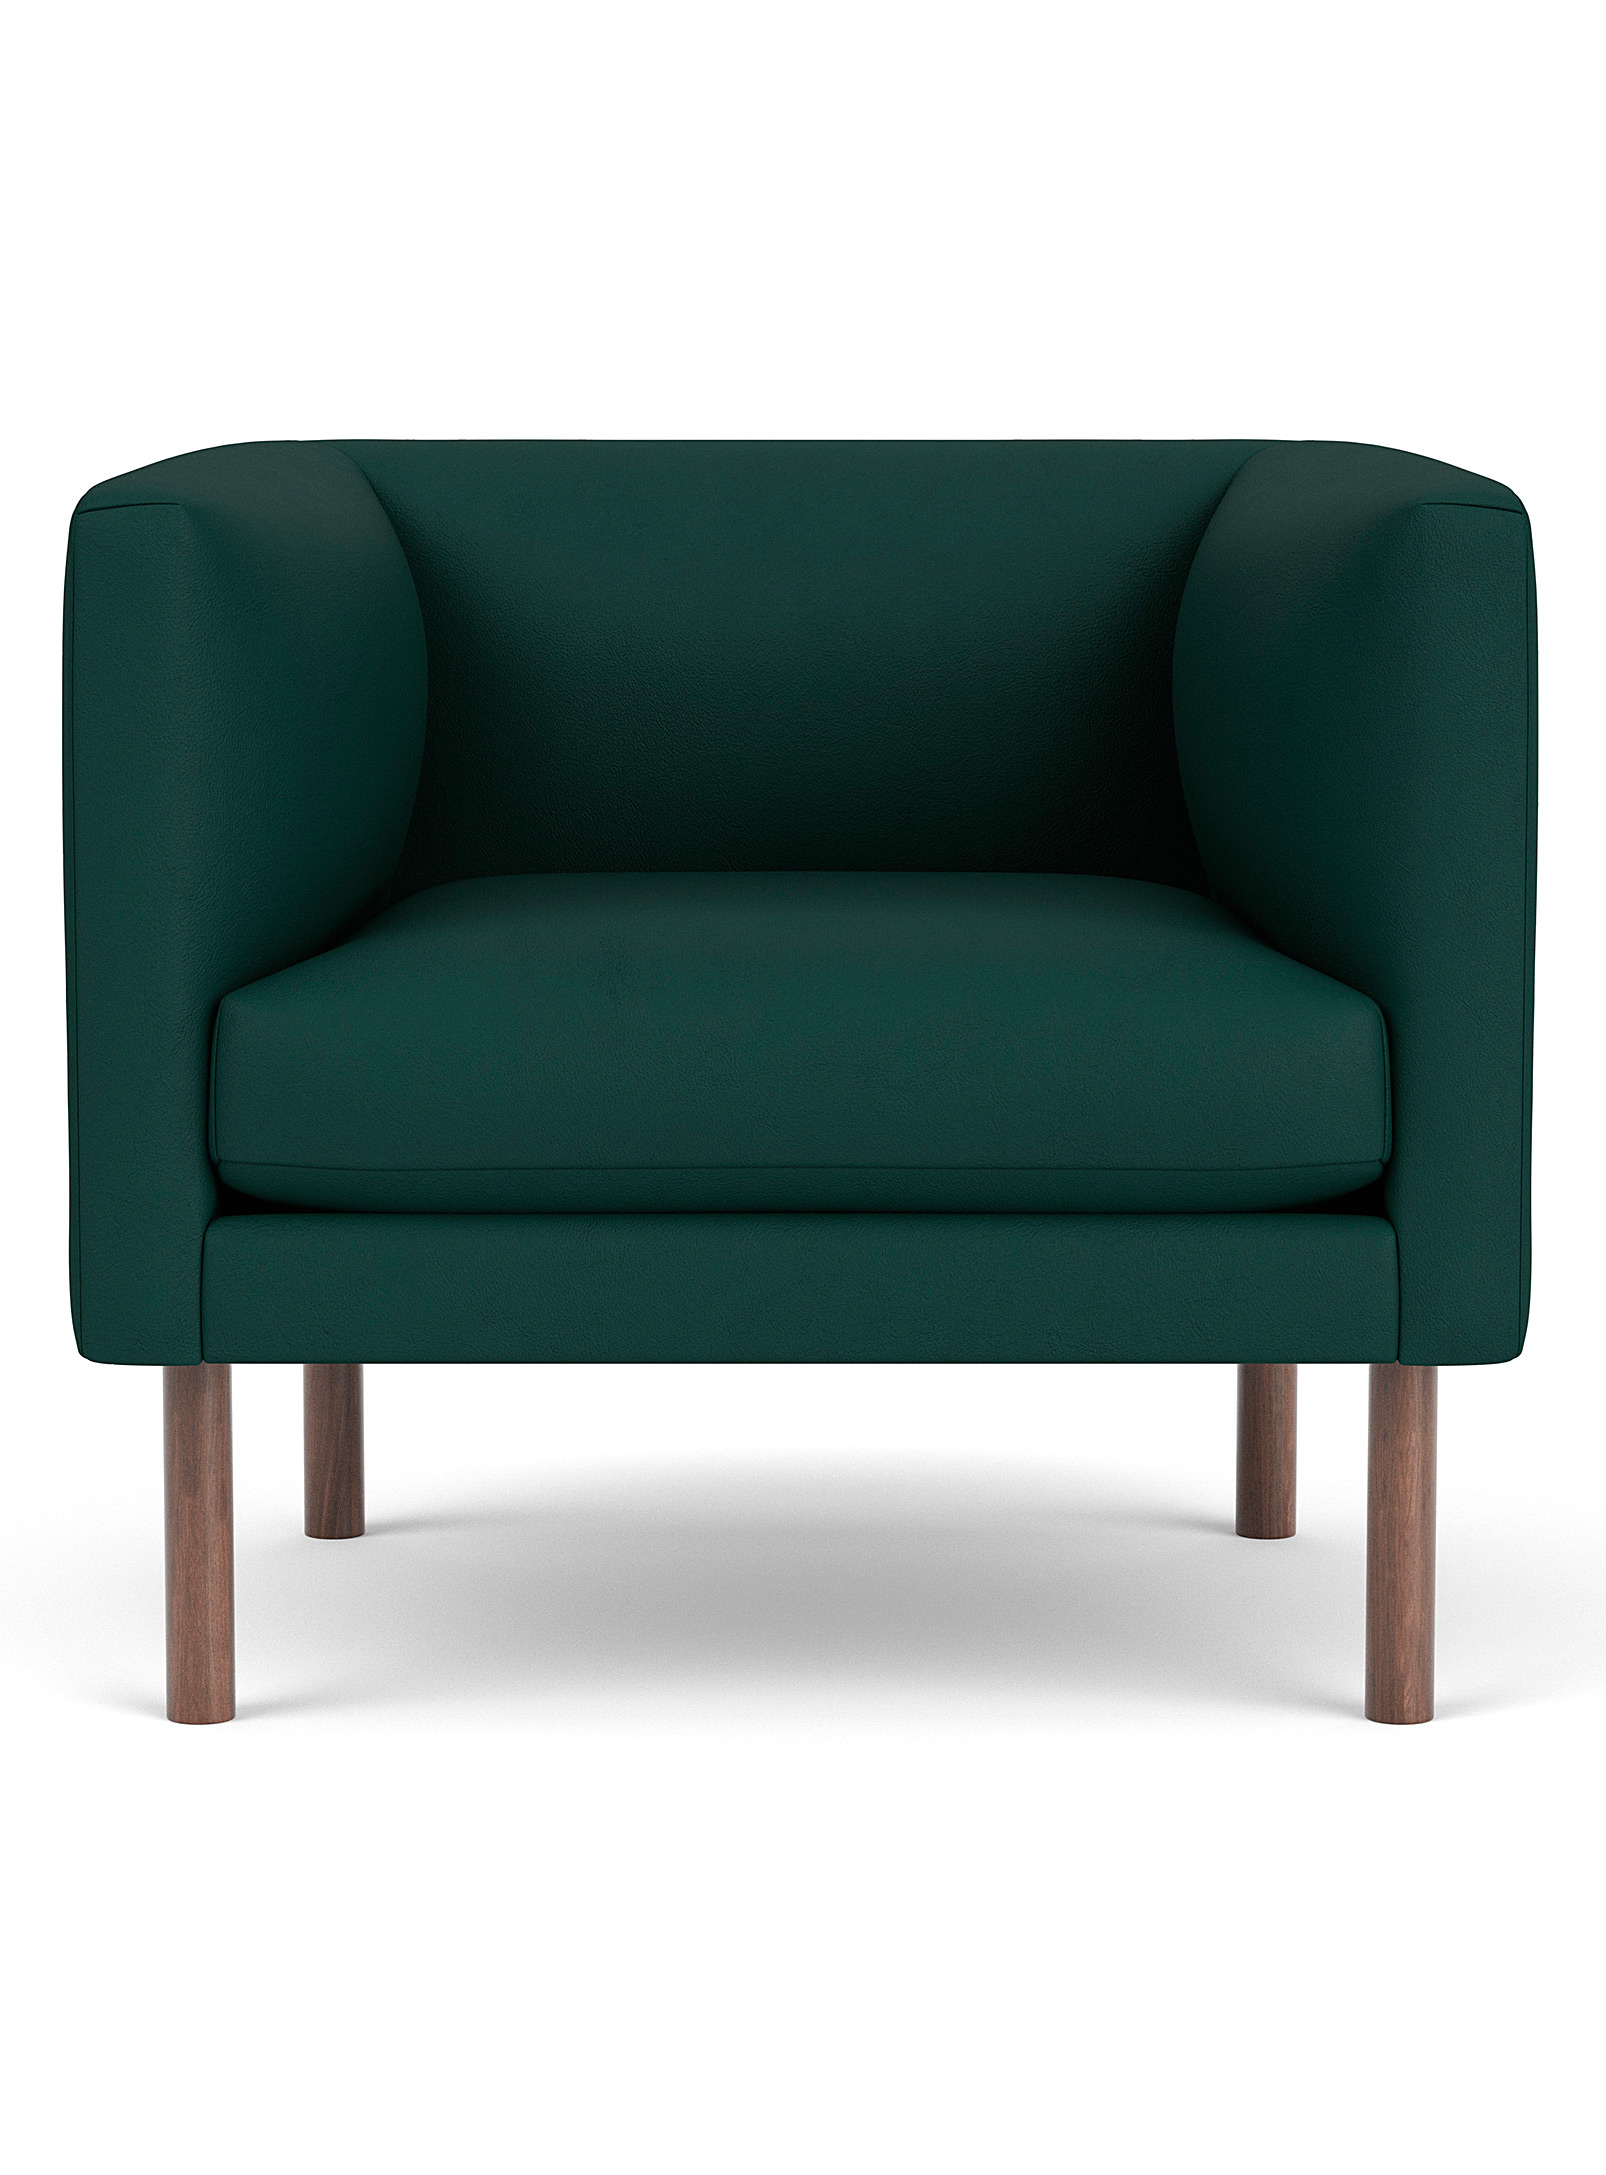 EQ3 - Green leather retro-style club chair